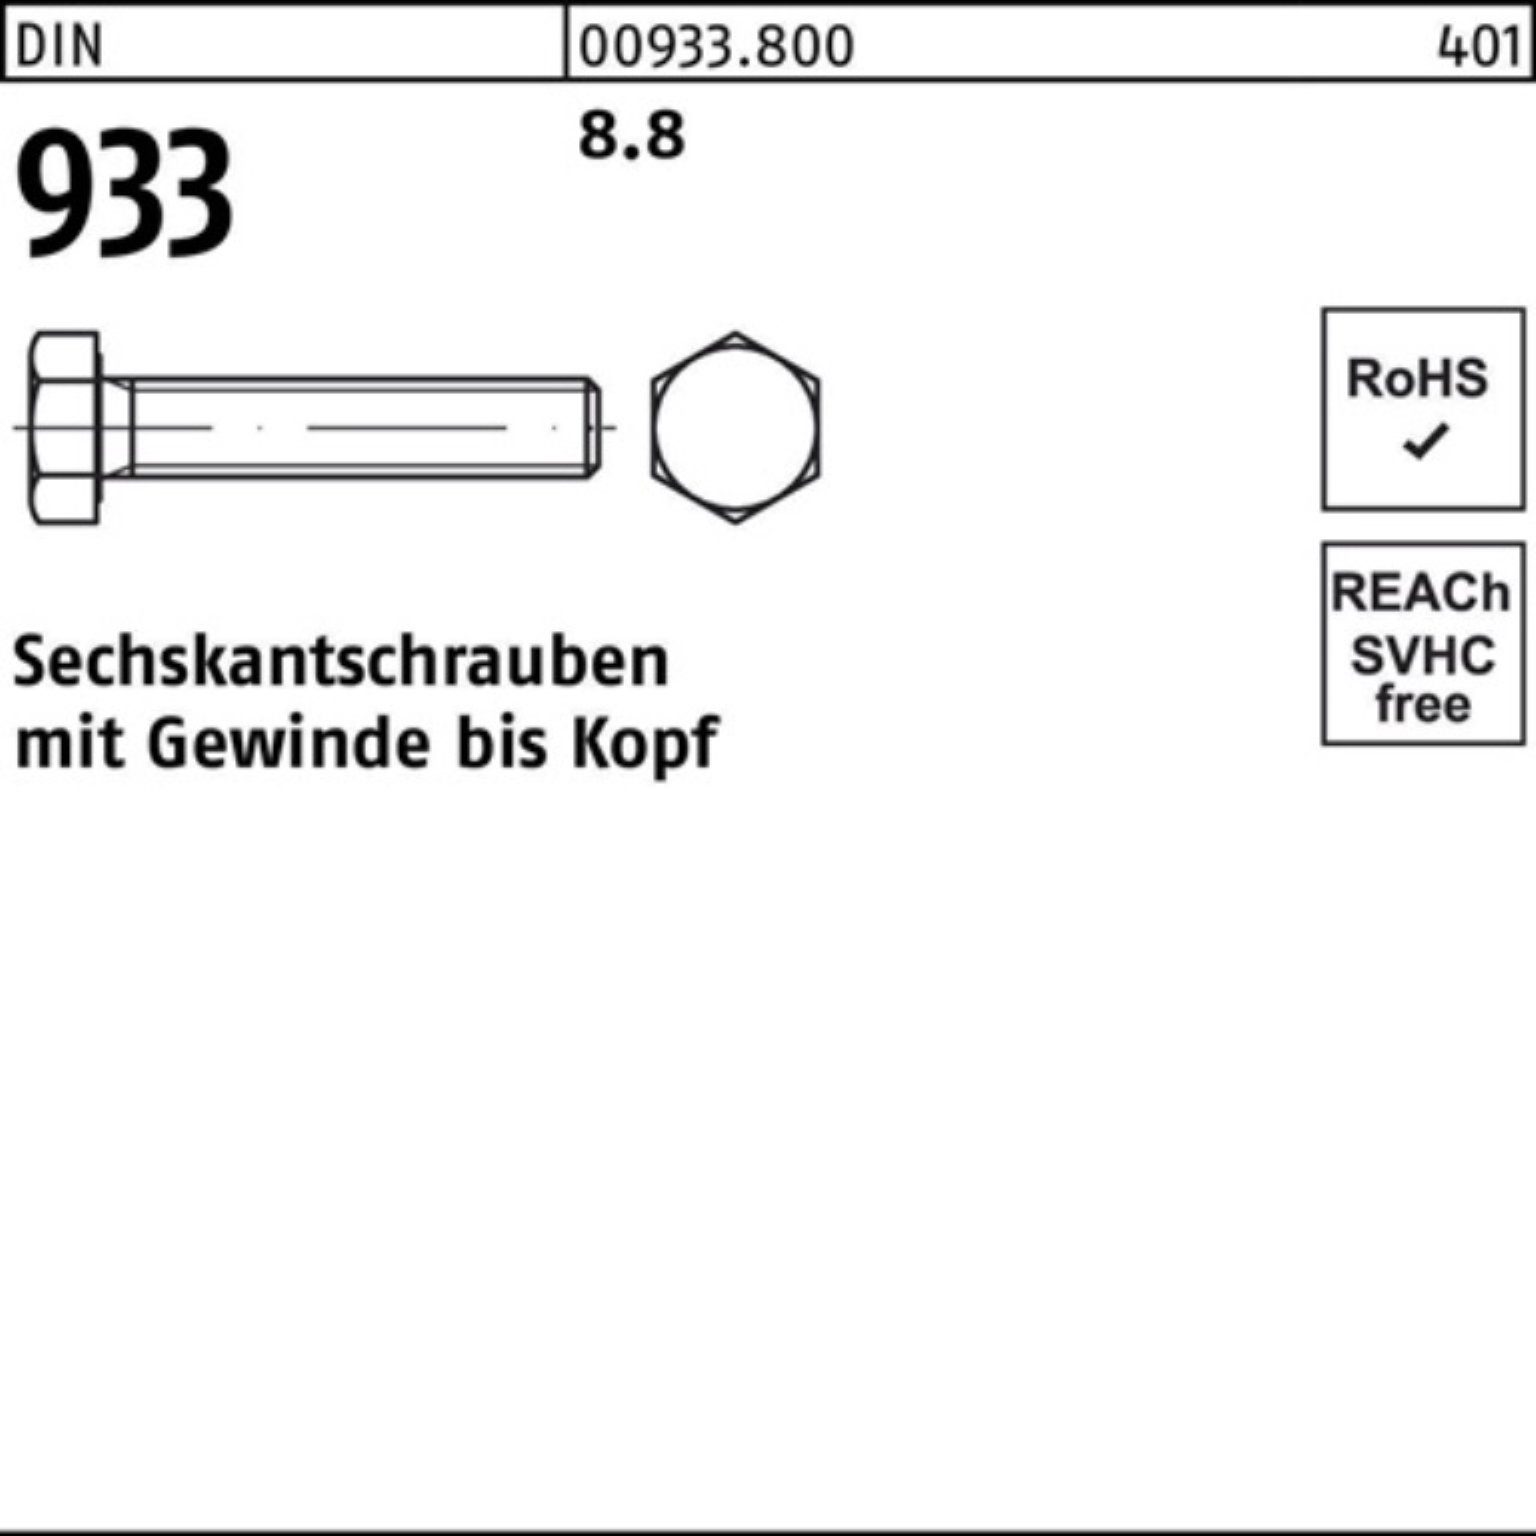 Reyher Sechskantschraube 100er Pack Sechskantschraube 933 Stück DIN M14x VG DIN 933 40 8.8 100